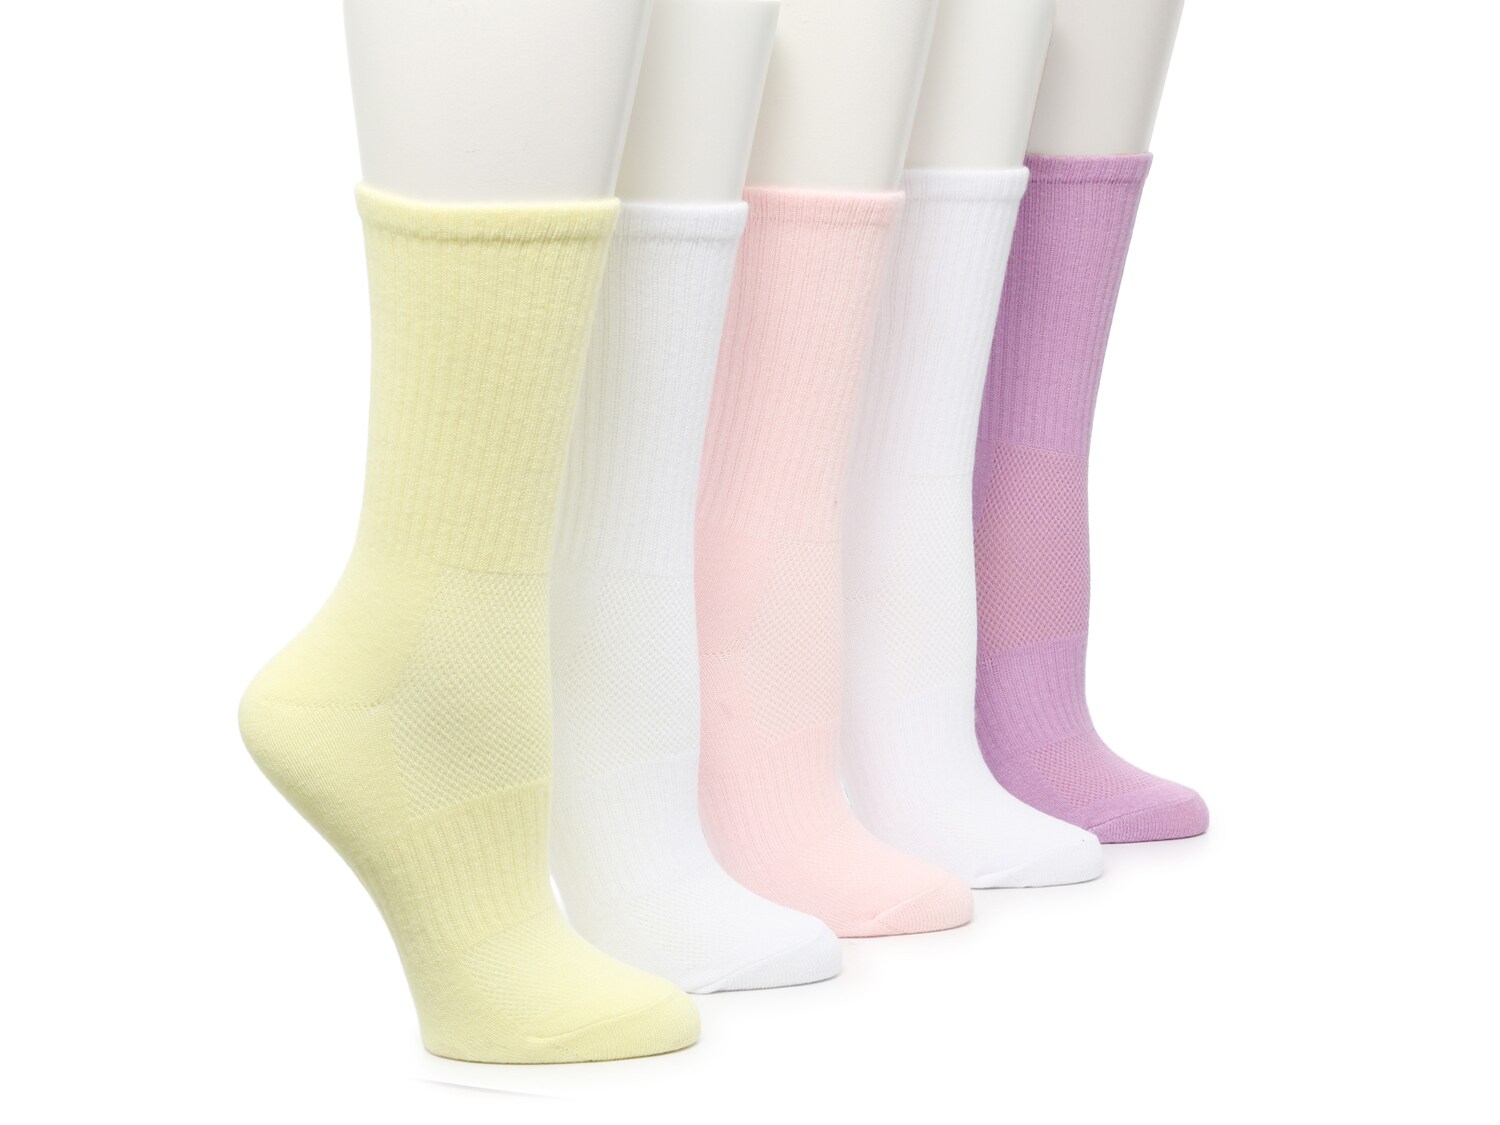 Steve Madden Athletic Women's Crew Socks - 5 Pack - Free Shipping | DSW